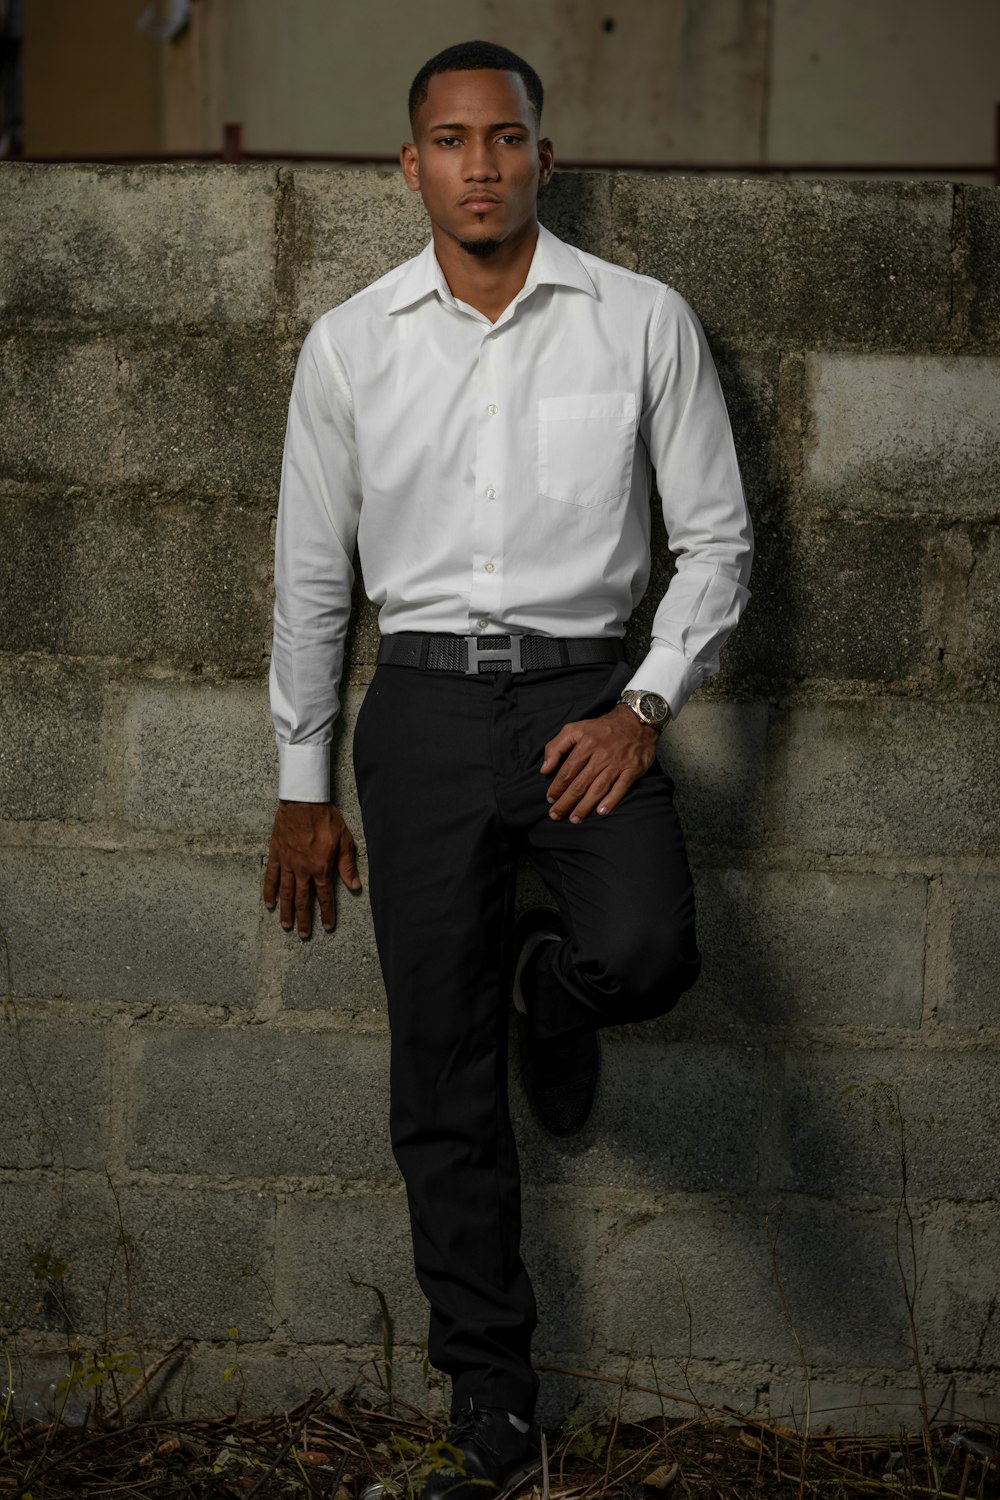 Mann in weißem Hemd und schwarzer Hose an graue Betonwand gelehnt